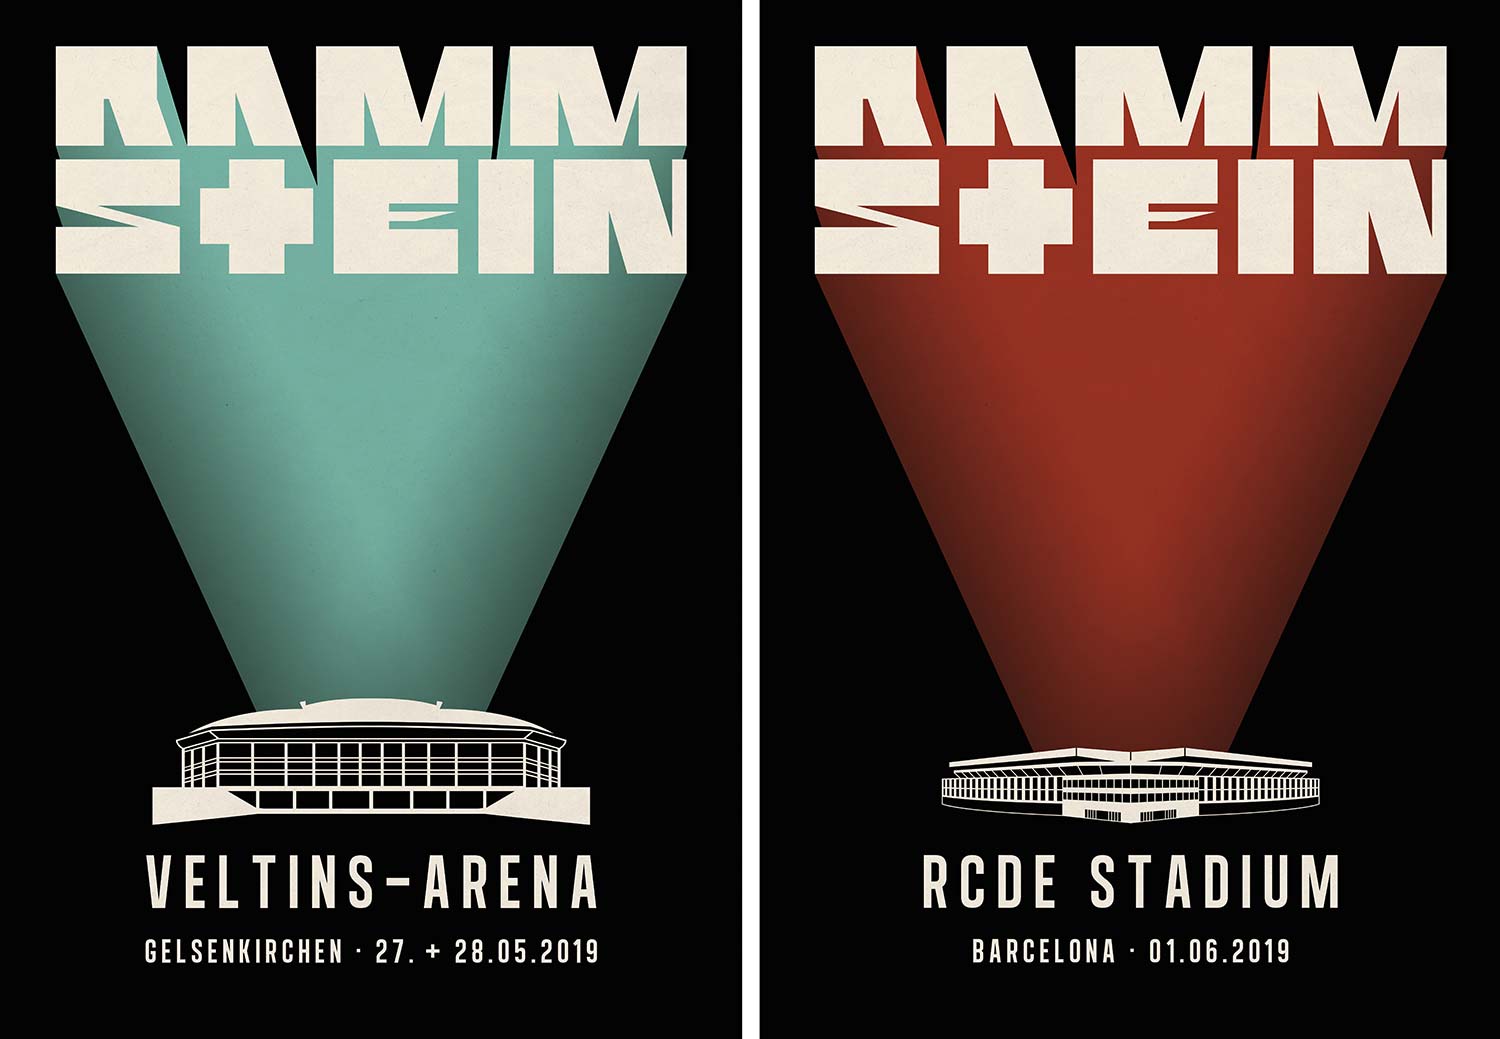 Rammstein. Stadion Tour 2019. 2